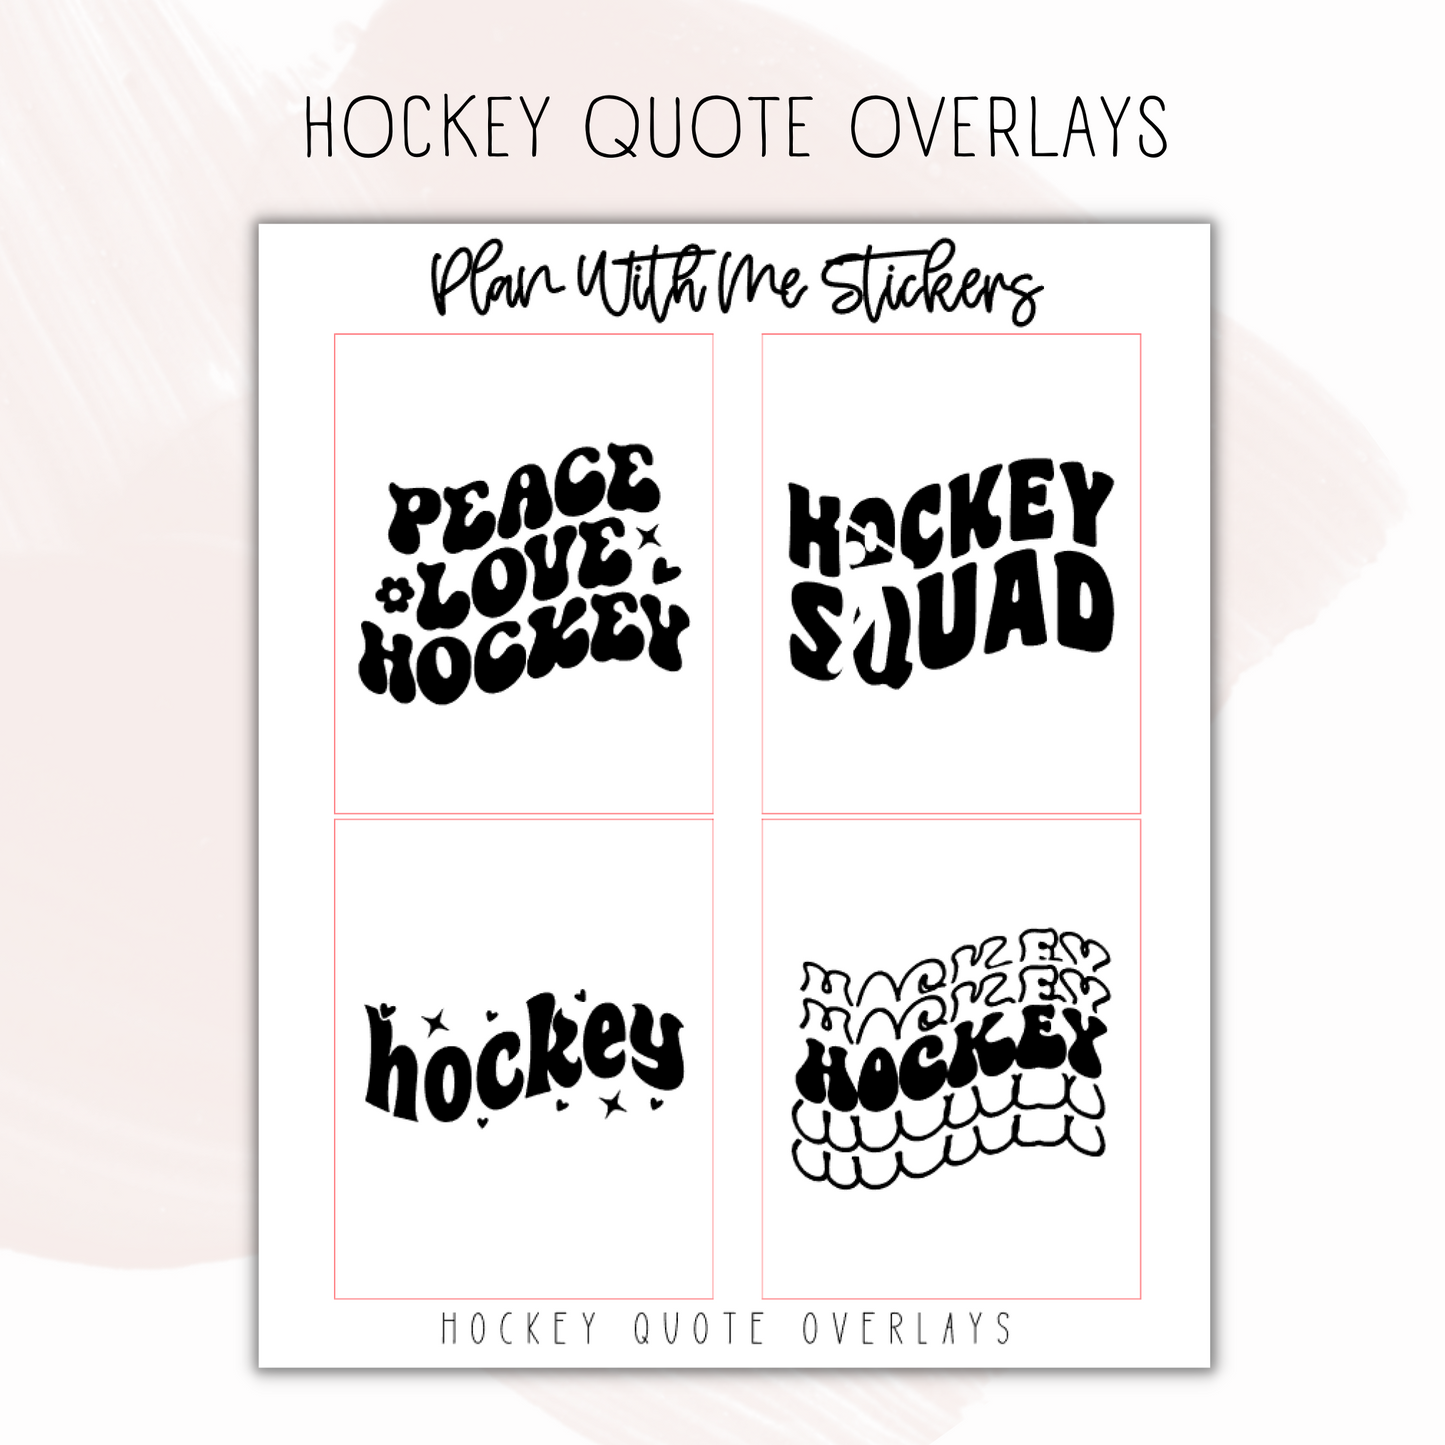 Hockey Quote Overlays